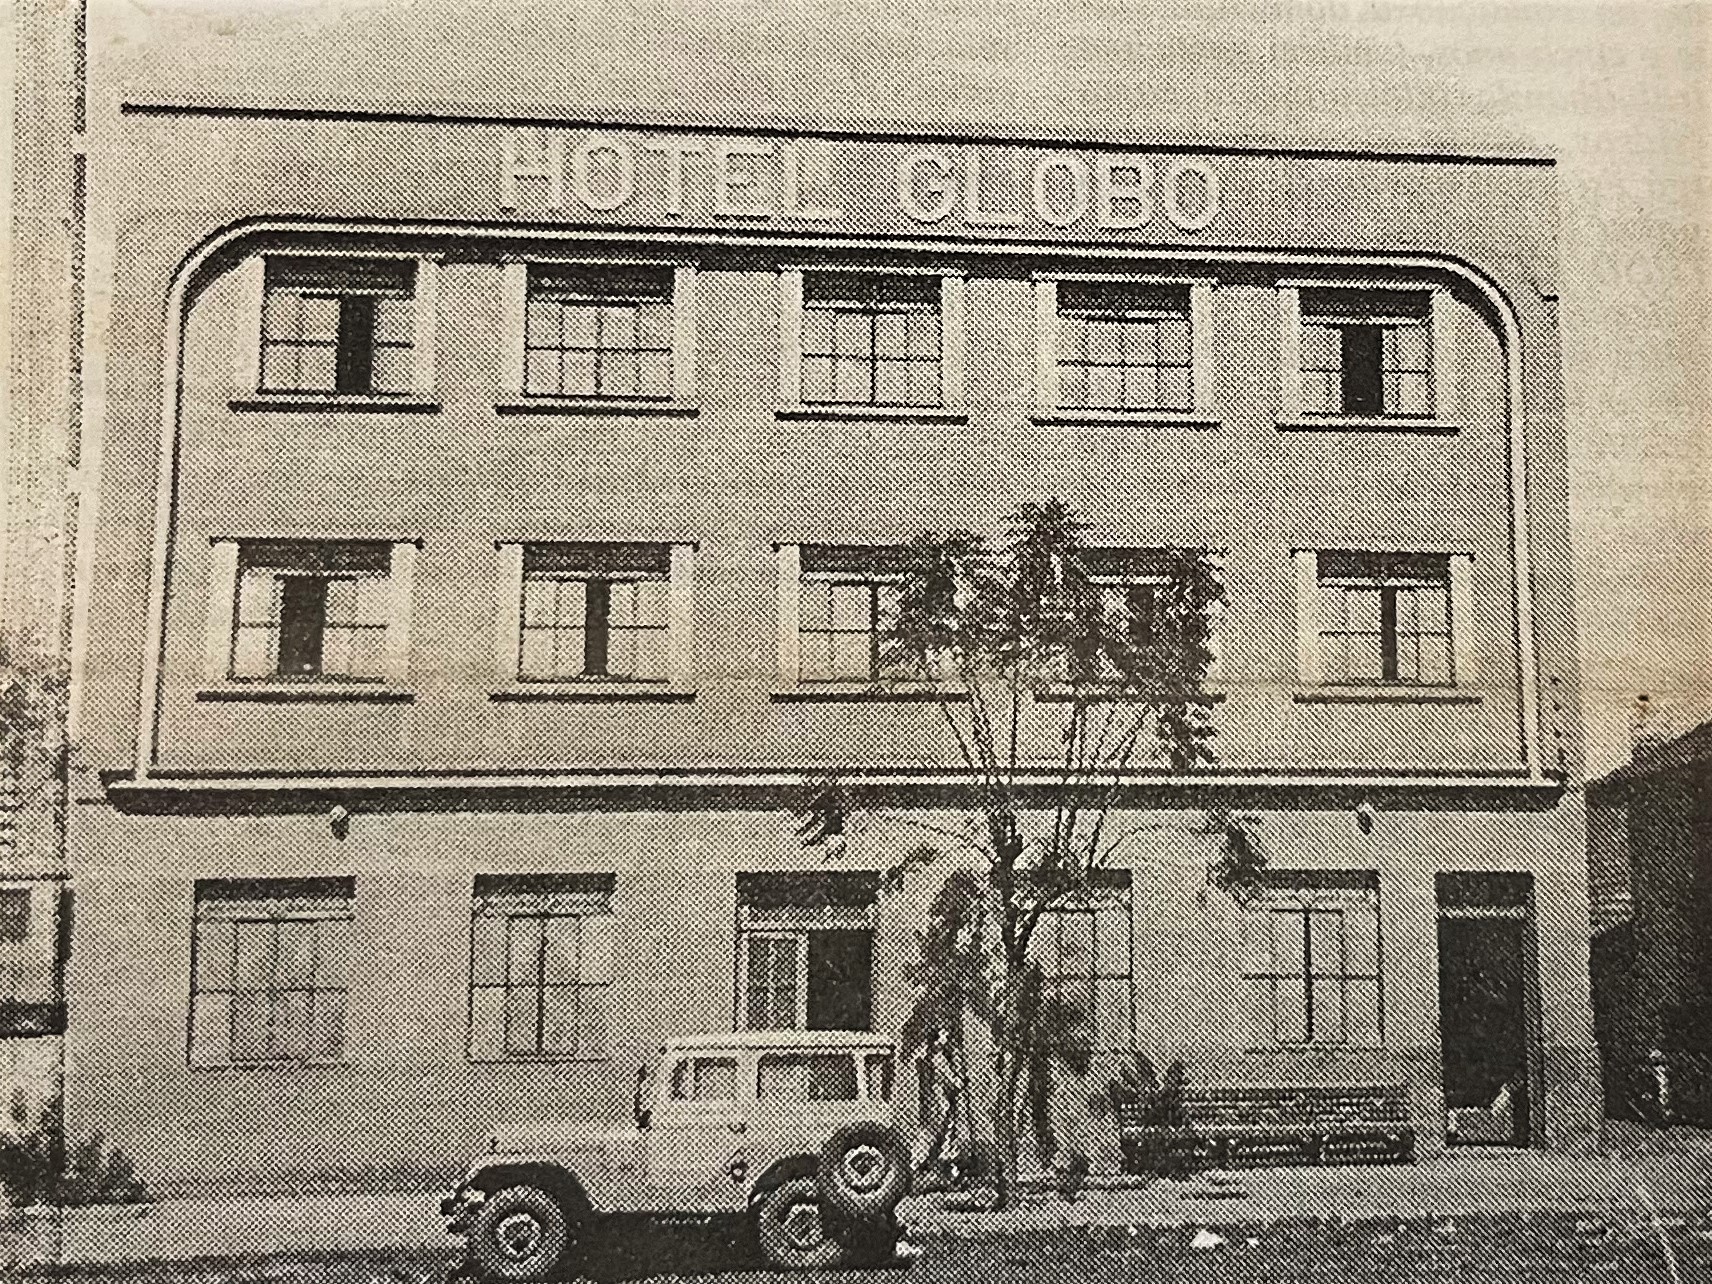 Hotel Globo - 1961